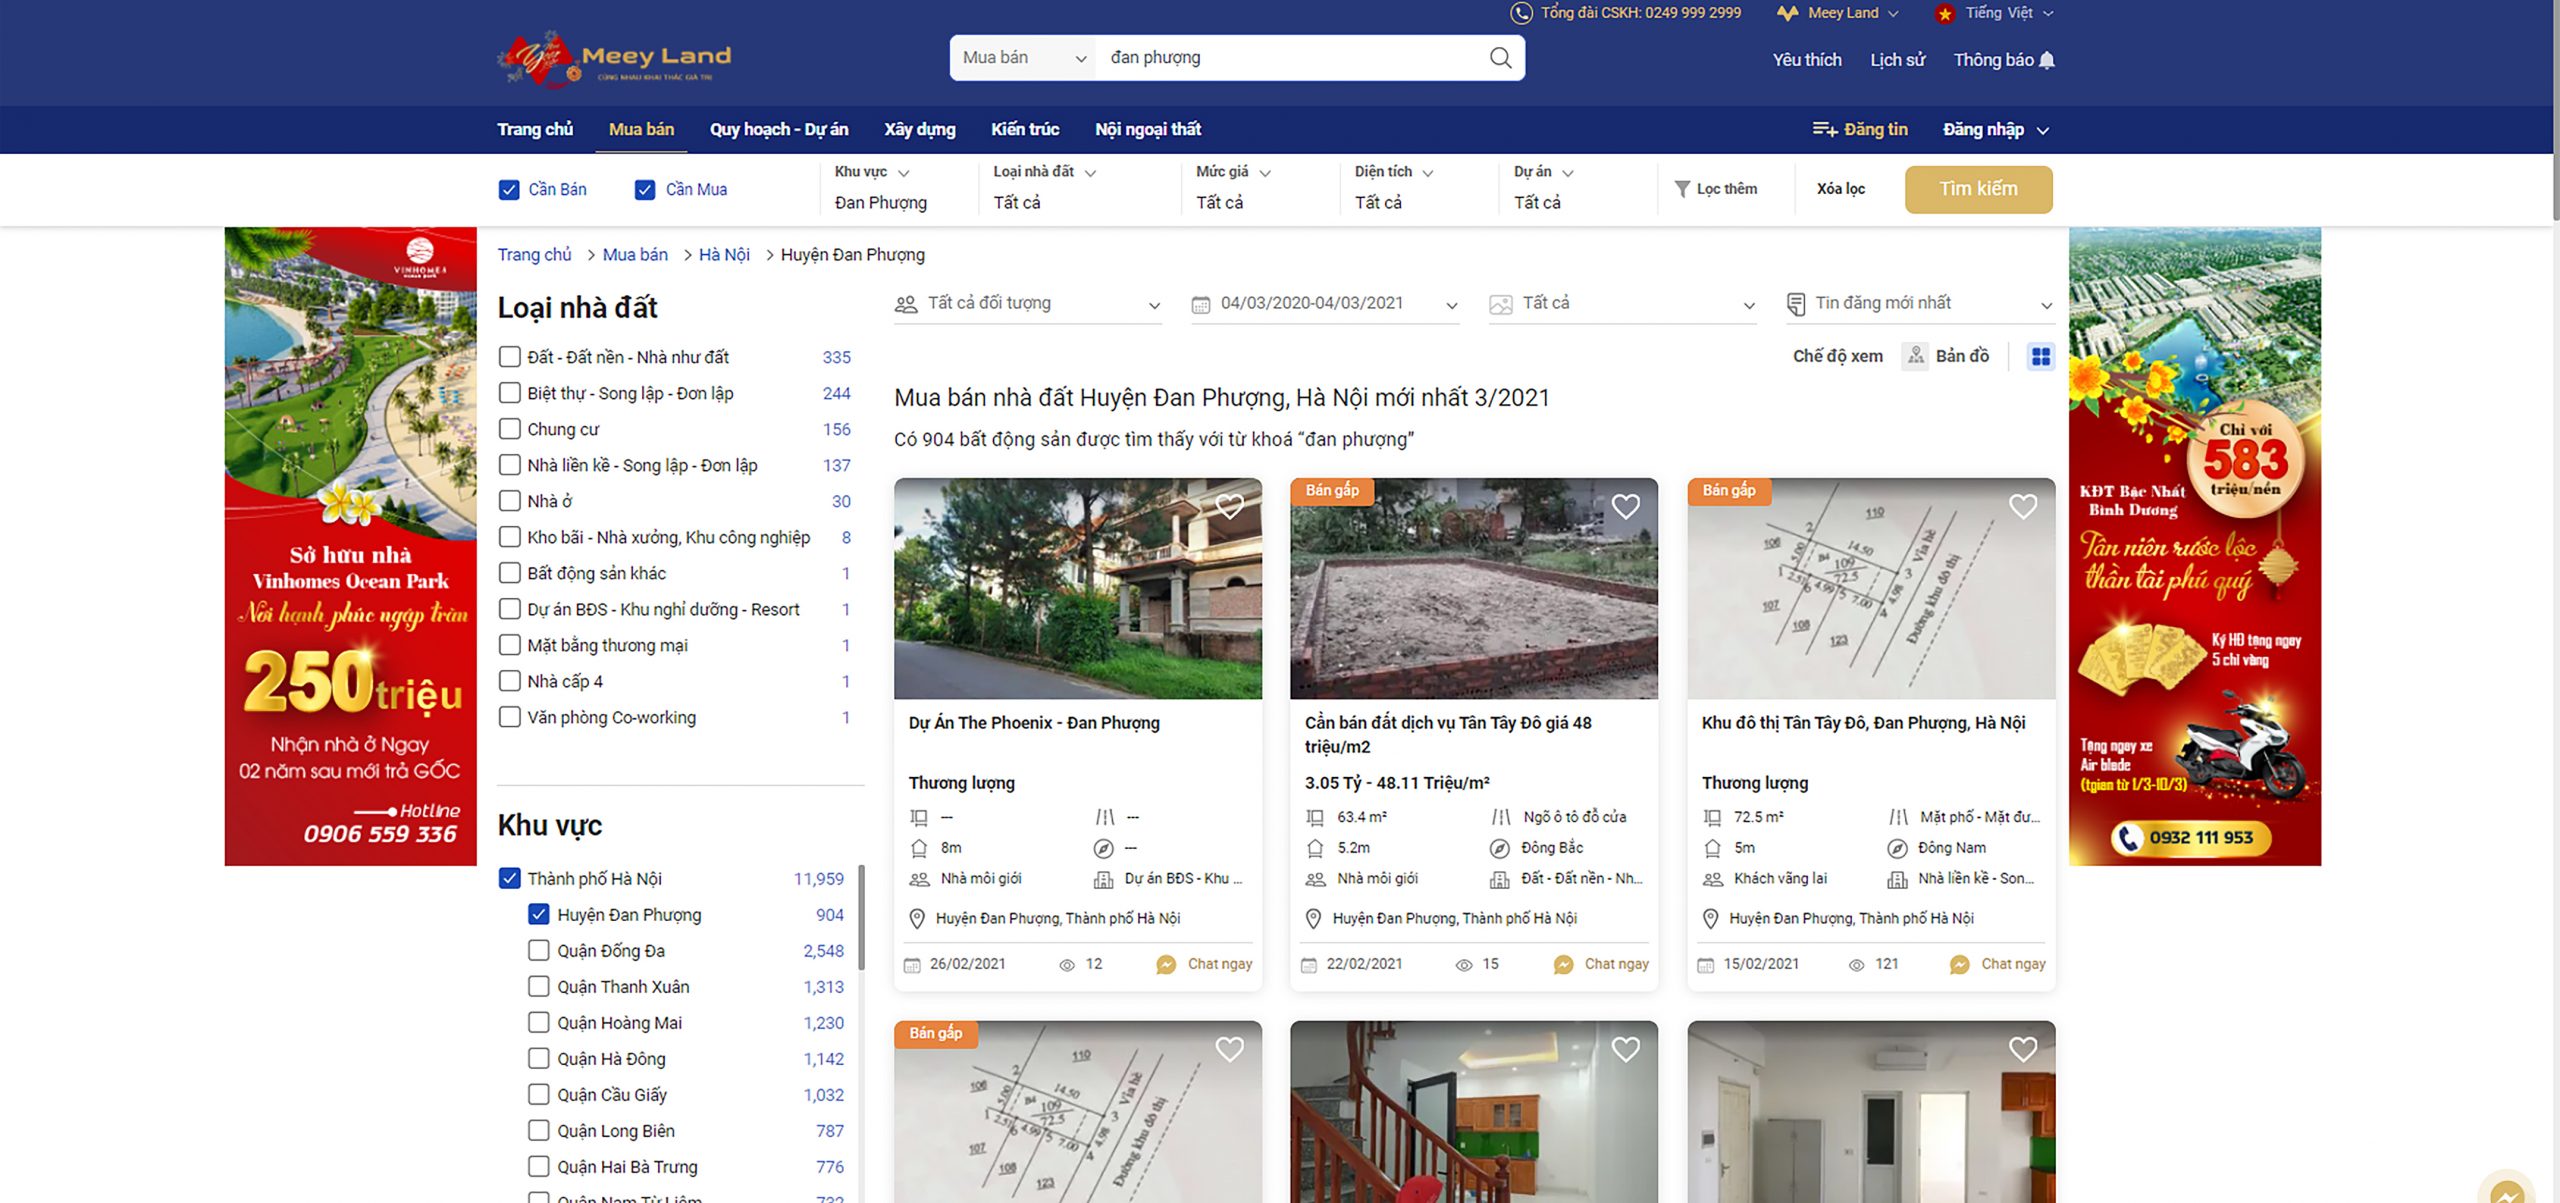  Nhiều tin đăng bán gấp bất động sản tại Đan Phượng, Hà Nội trên website meeyland.com